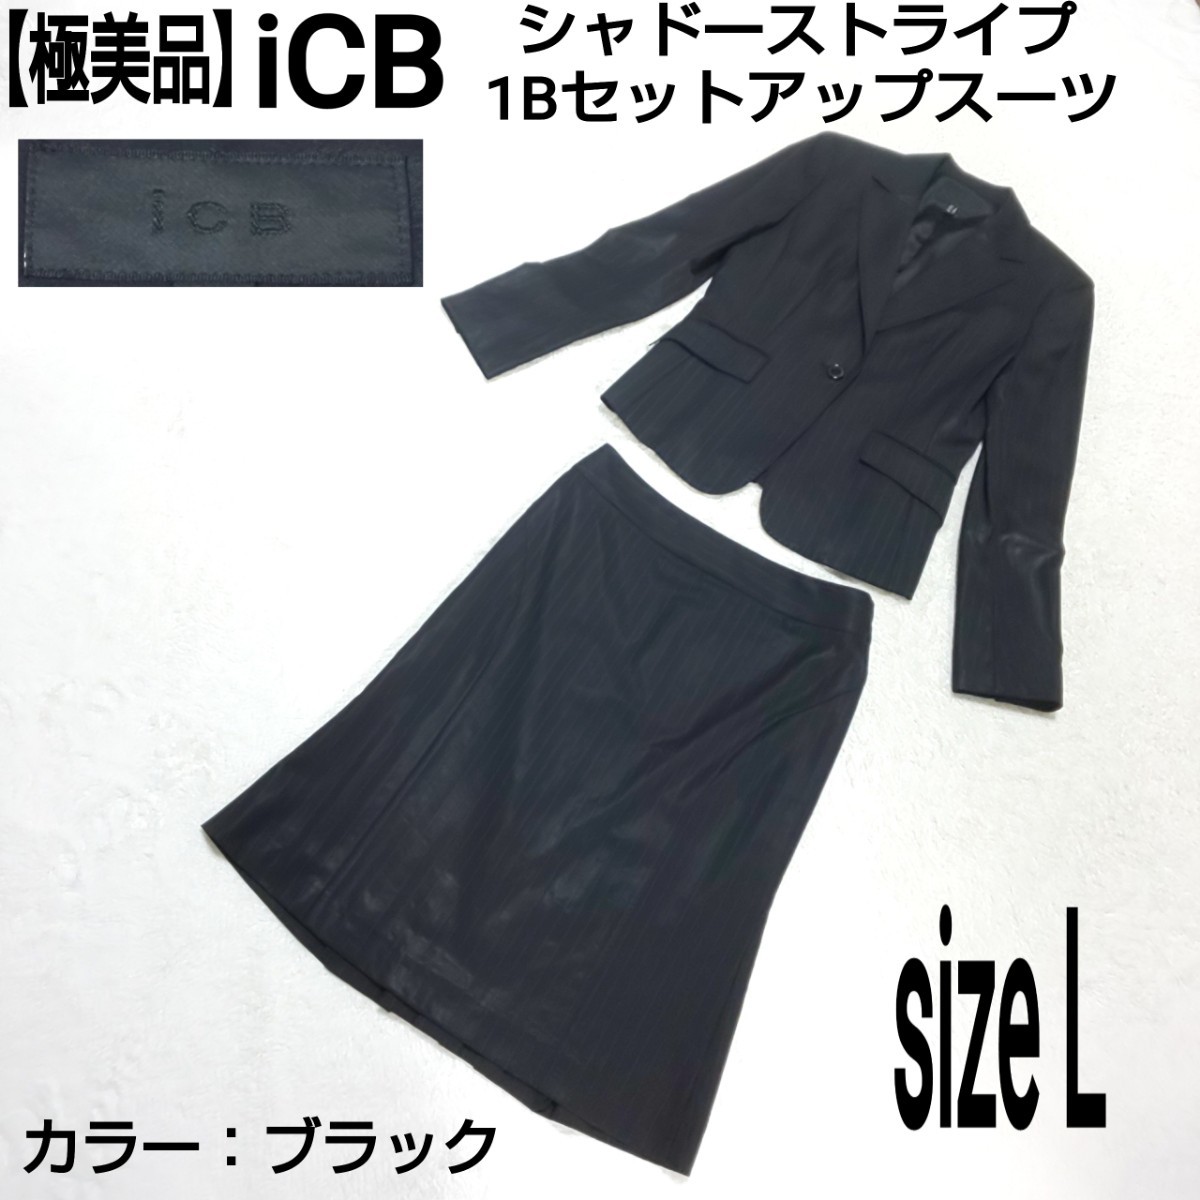 【極美品】iCB アイシービー シャドーストライプ セットアップスーツ(L) 1Bテーラードジャケット フォーマル ビジネス ママスーツ ブラック